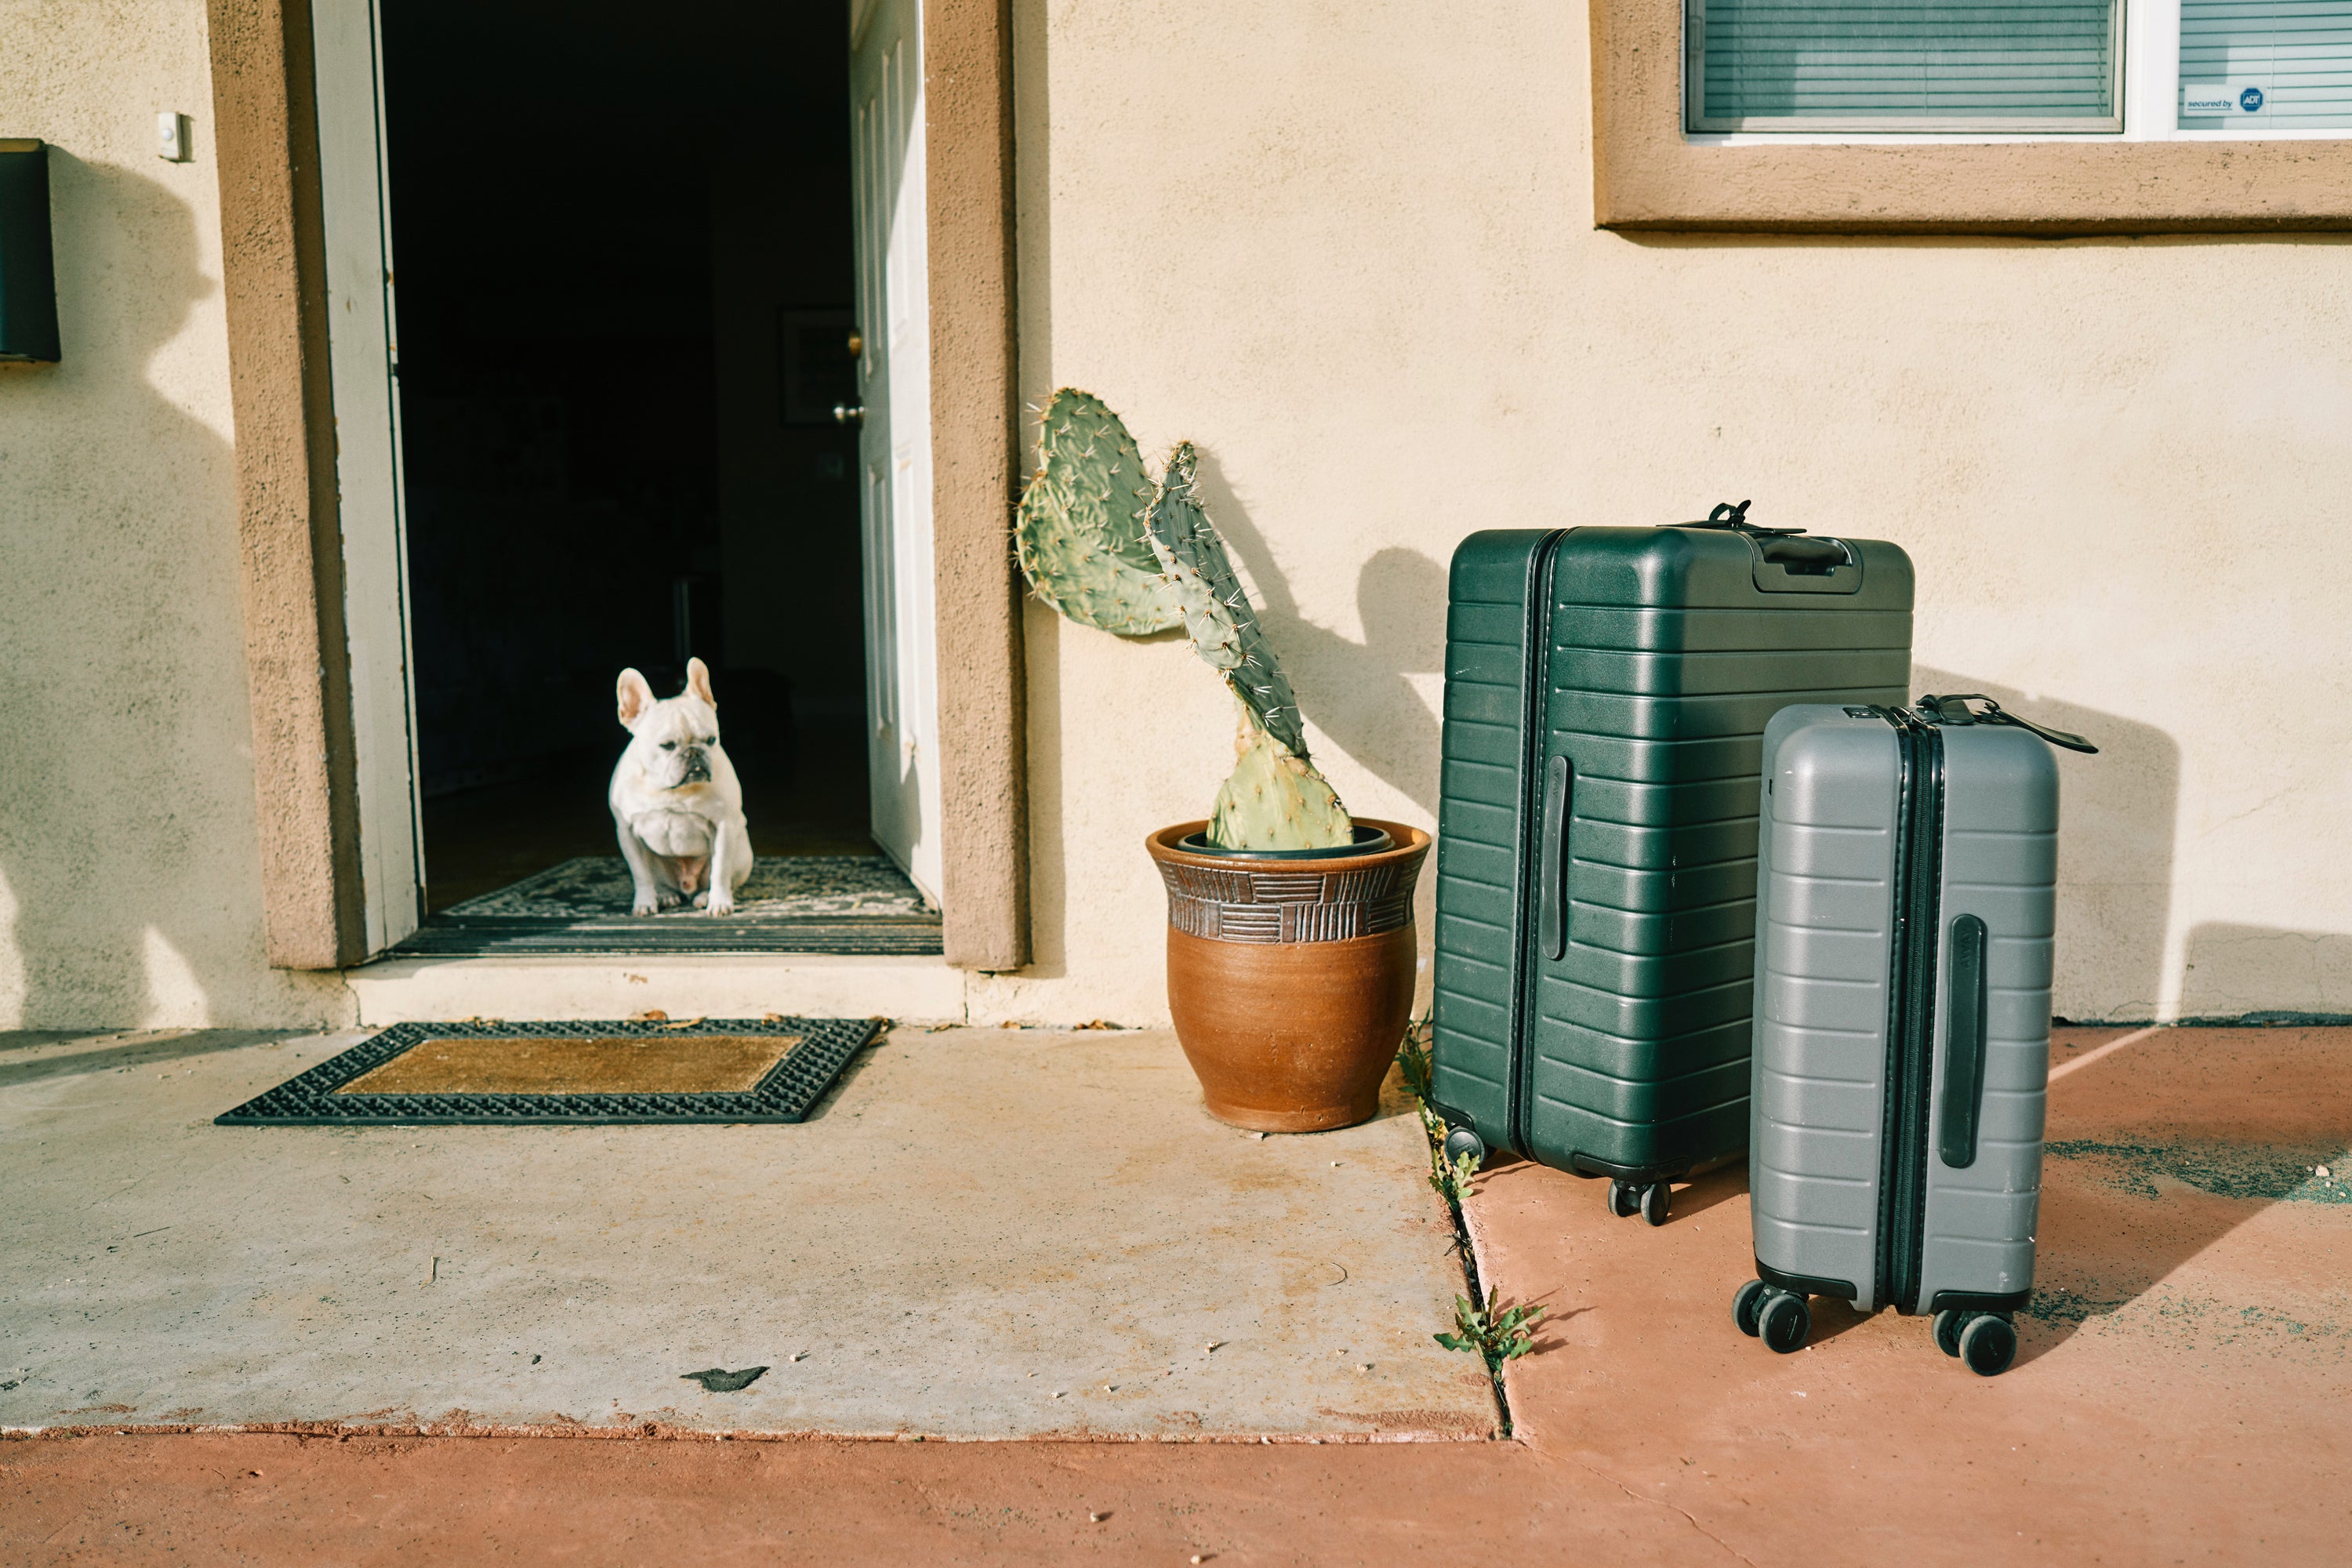 Dog next to luggage